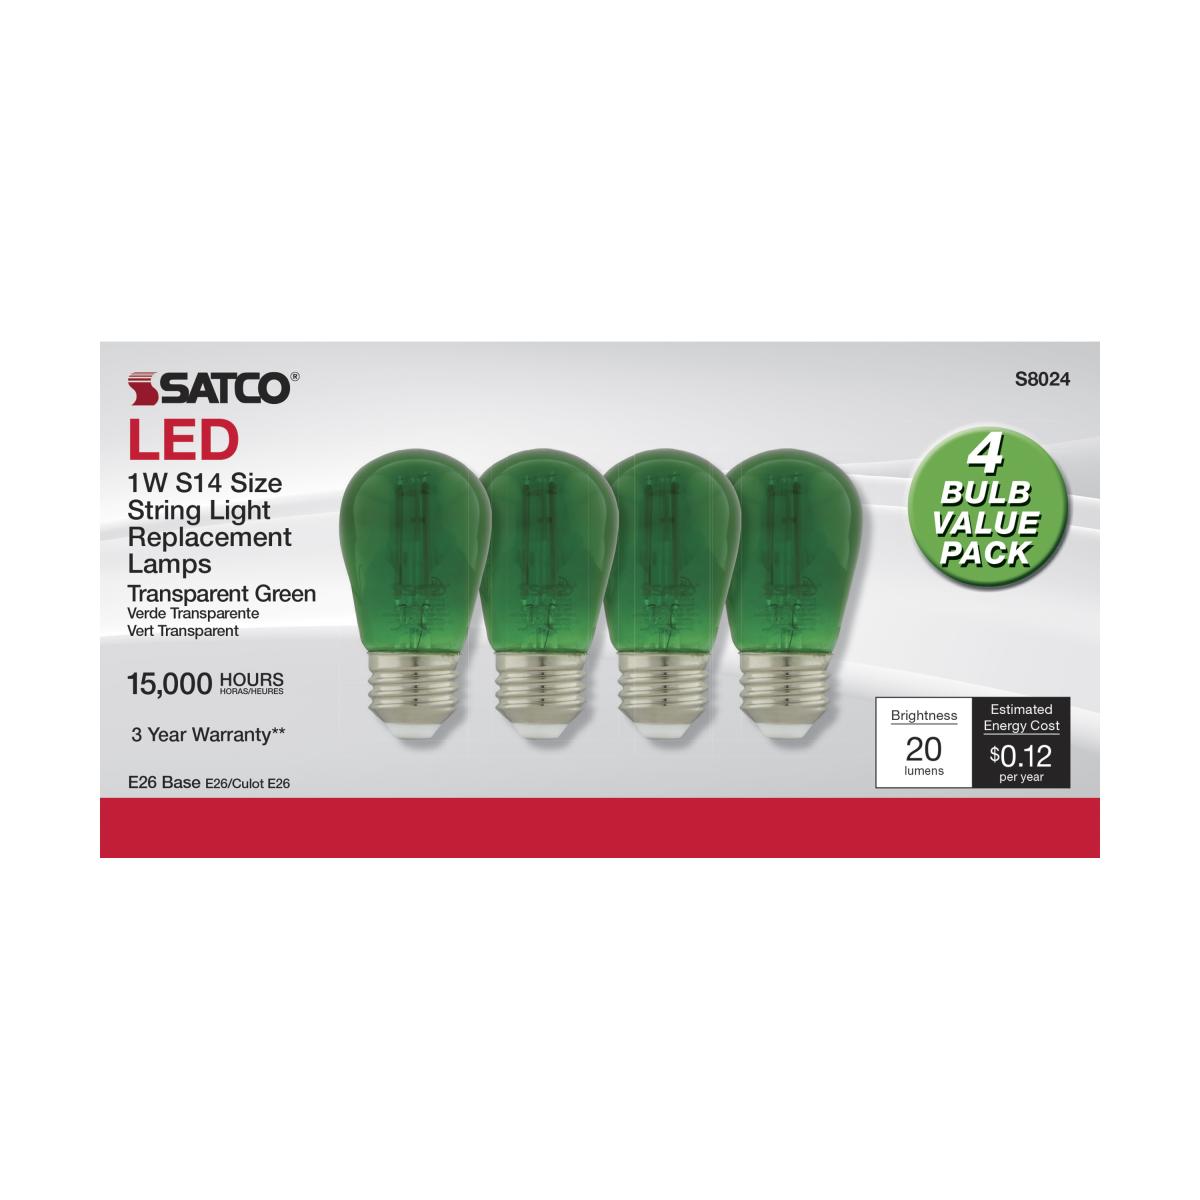 LED S14 Straight Tapered Bulb, 1 Watt, 30 Lumens, Green, E26 Medium Base, Green Finish, Pack Of 4